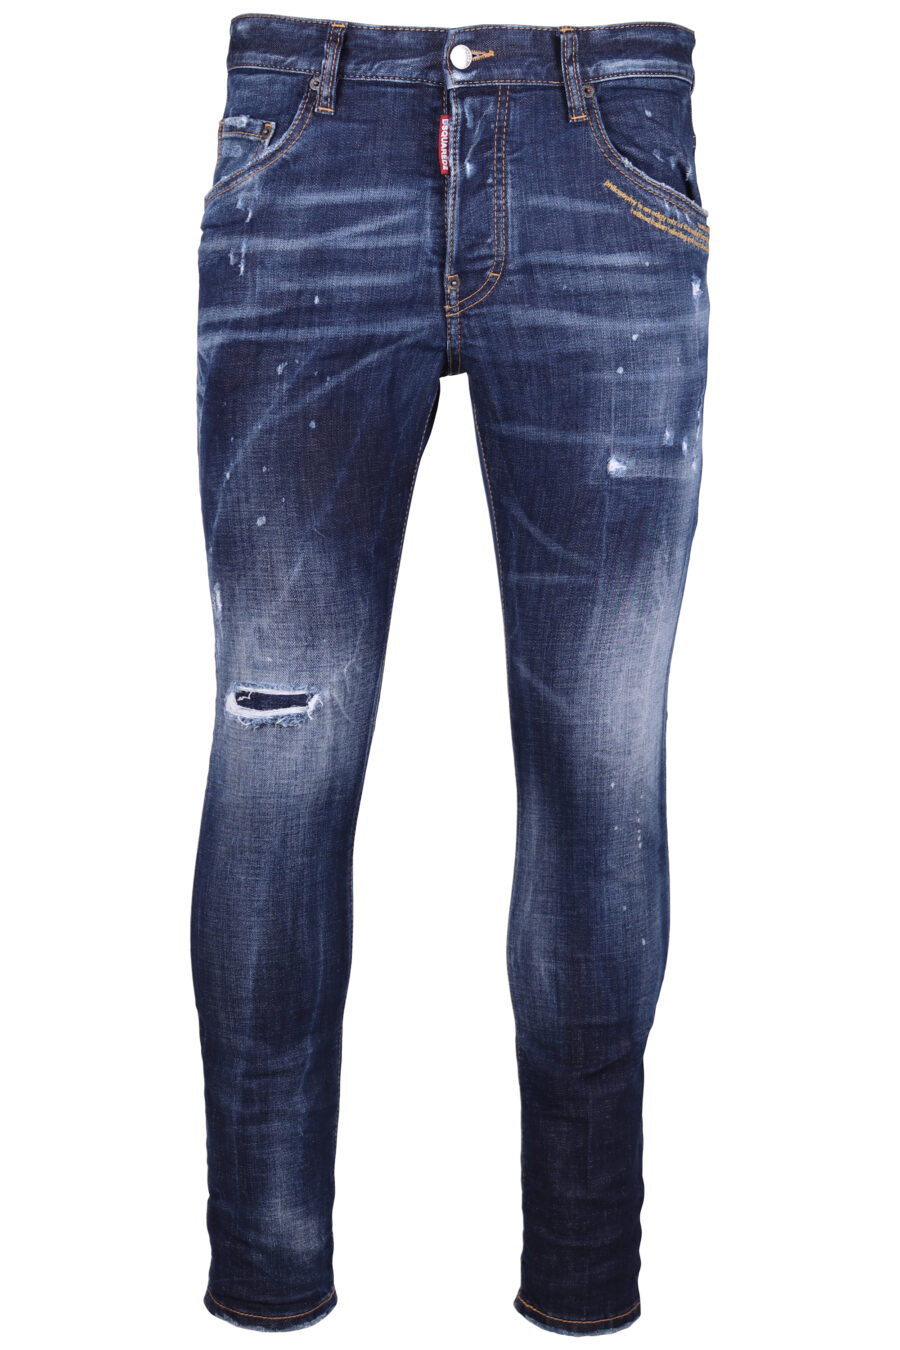 Pantalón vaquero "Skater" azul oscuro semiroto con detalle rojo - IMG 9291